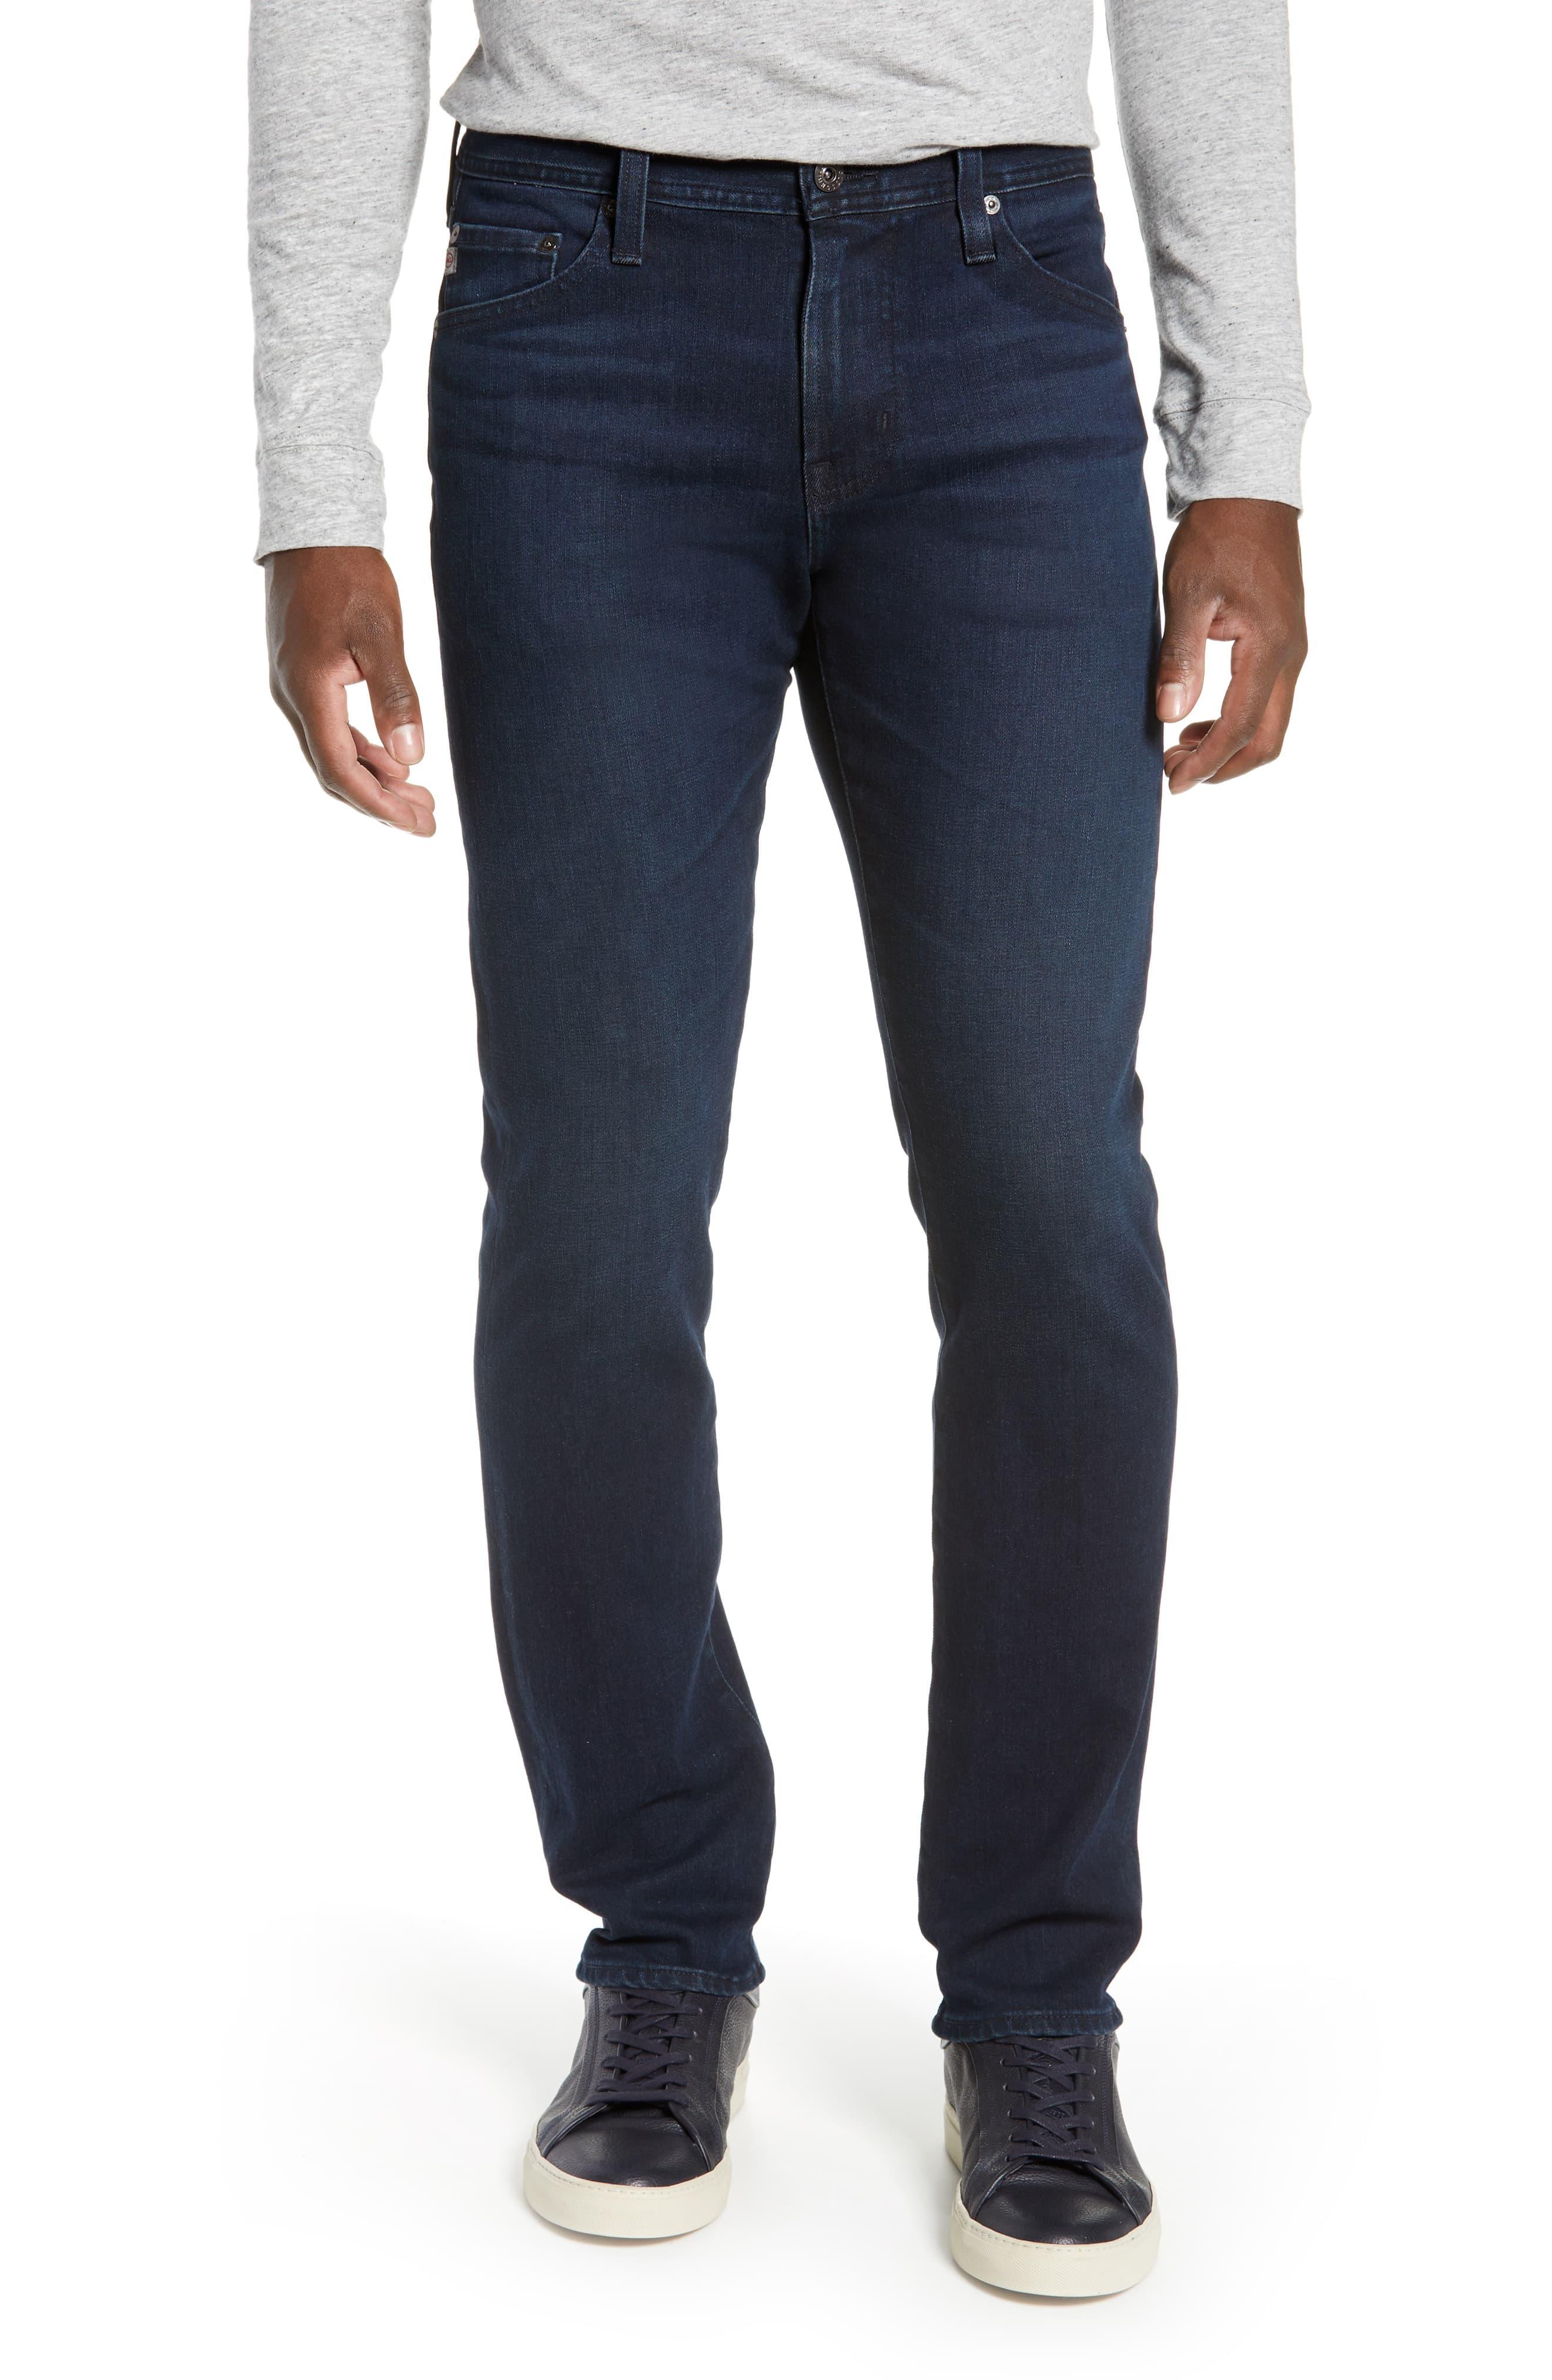 AG Jeans Denim Everett Slim Straight Leg Jeans in Blue for Men - Save ...